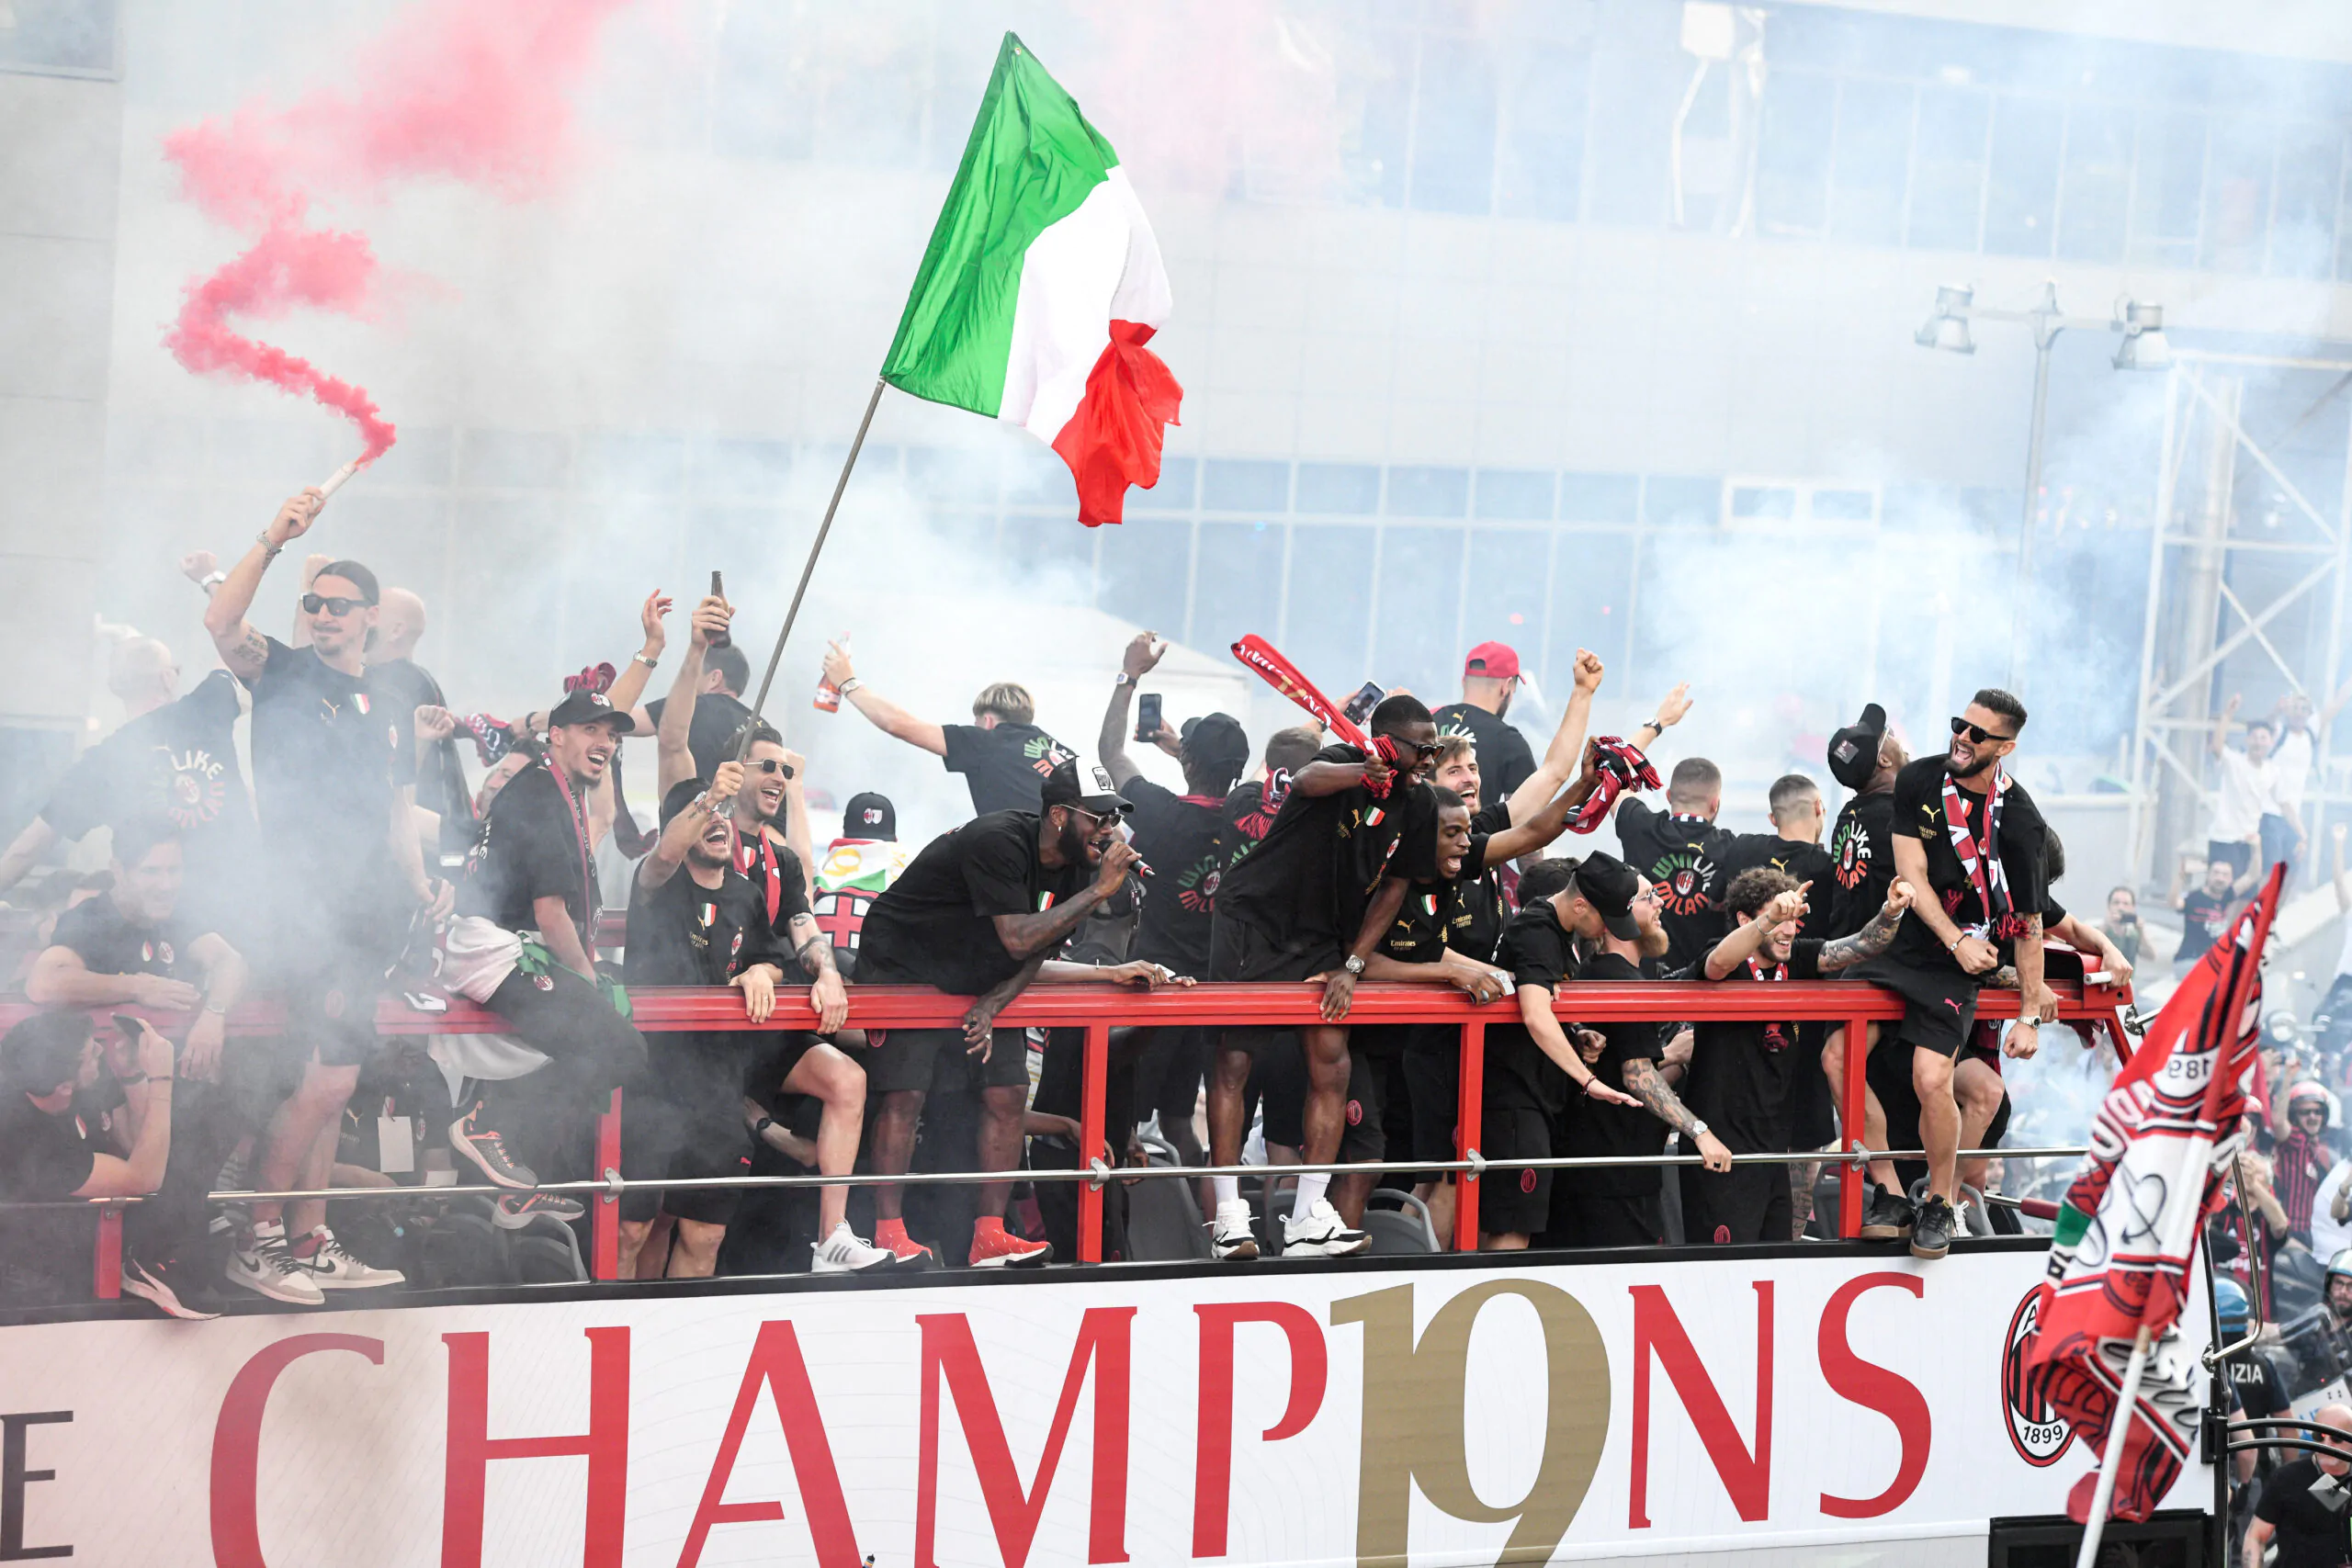 Il Milan vola in classifica: registrato come primo marchio italiano a livello internazionale!